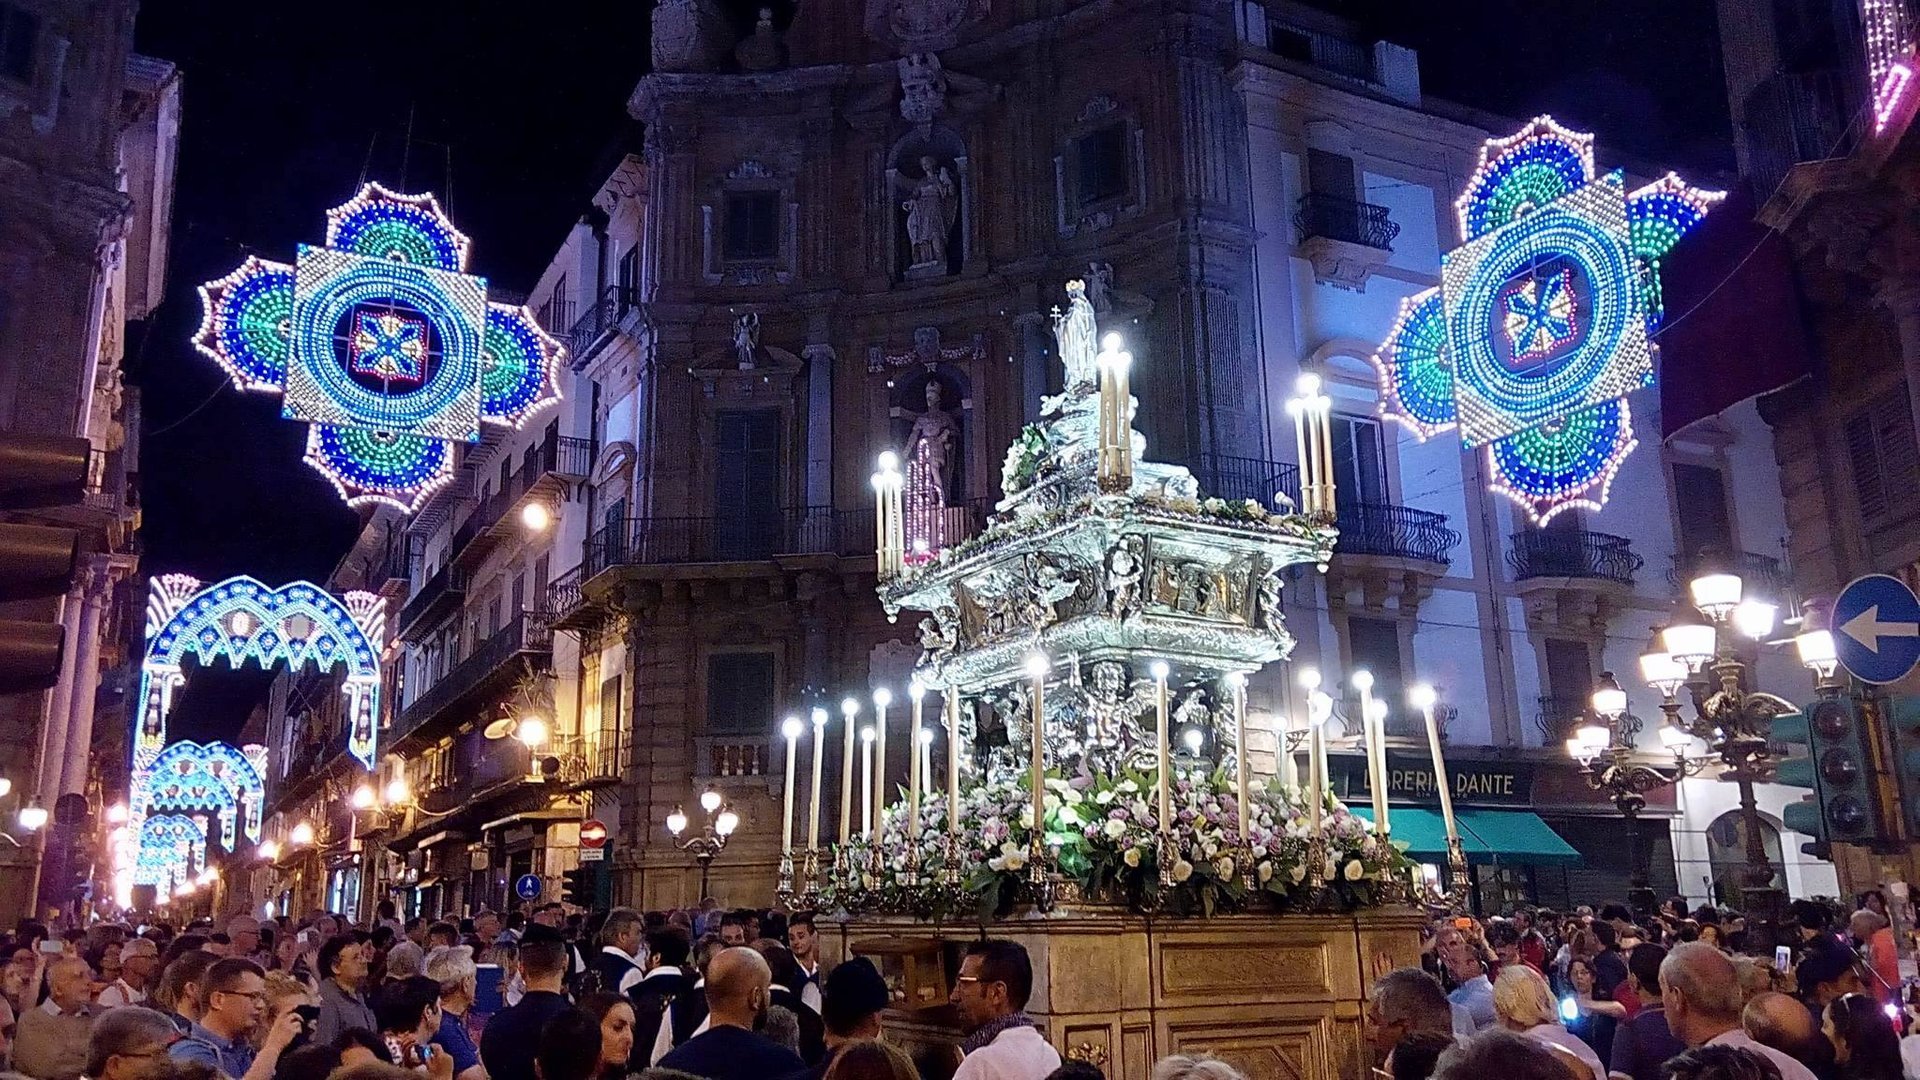 Festino di Santa Rosalia 2021 in Sicily Dates